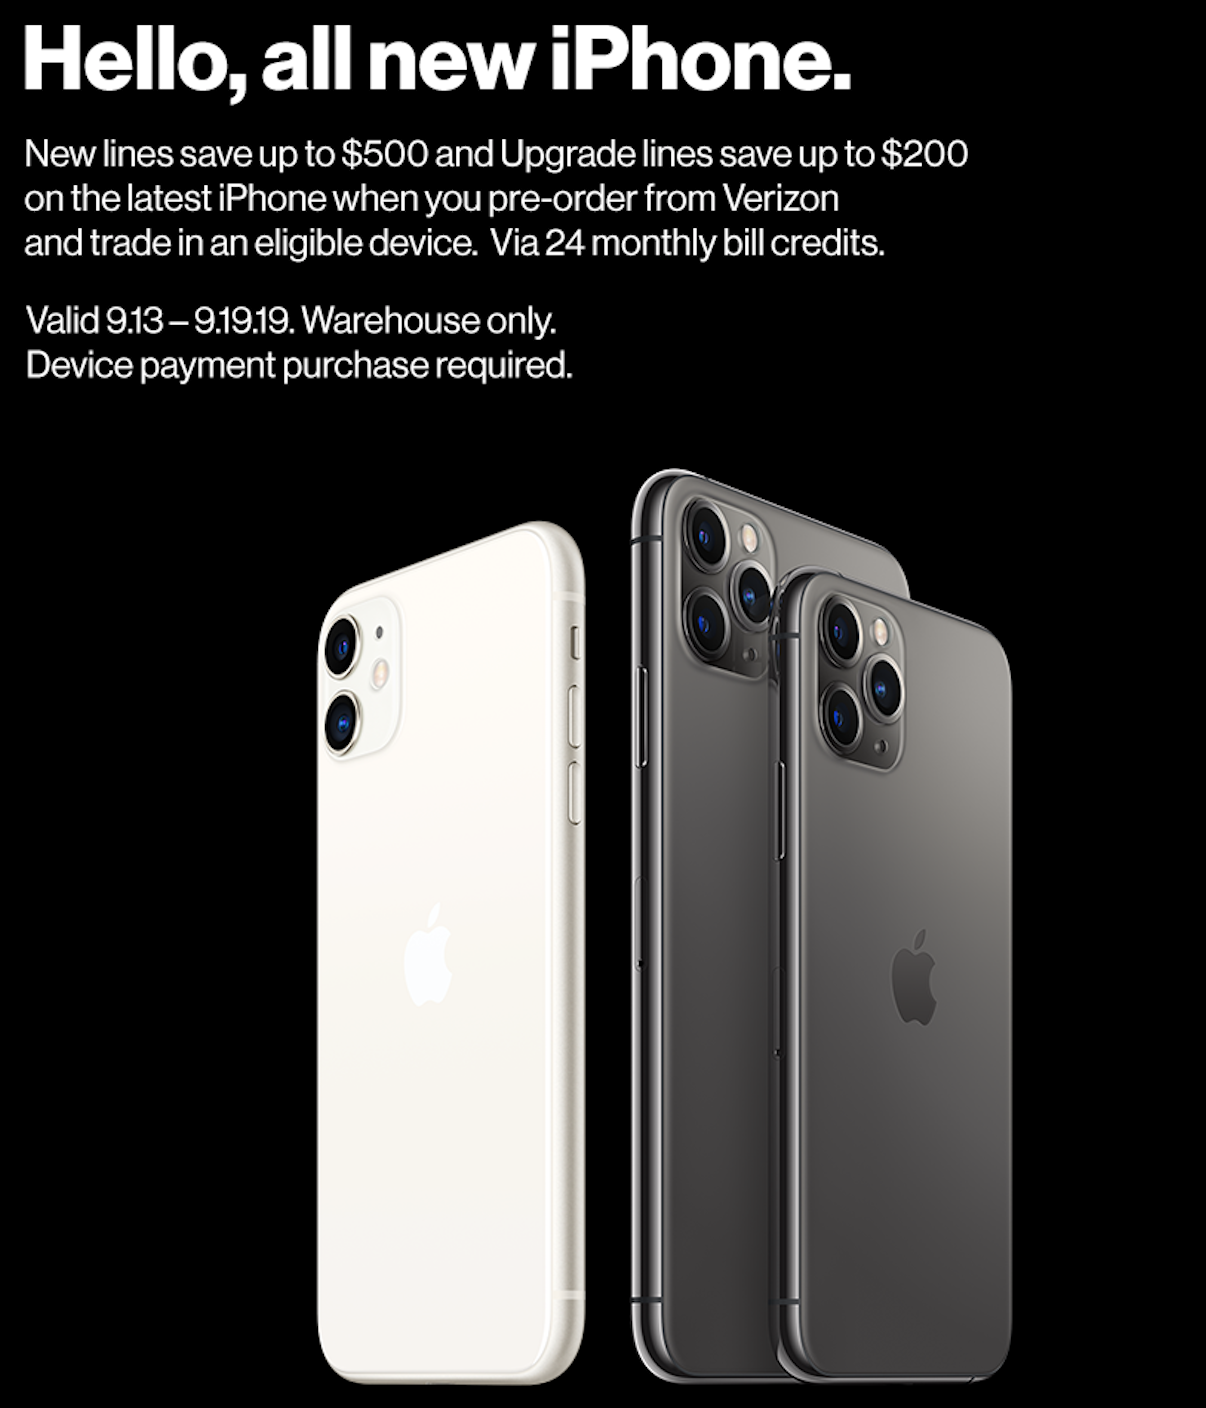 Costco店内预定Verizon iPhone 11全系列 最高节省500刀